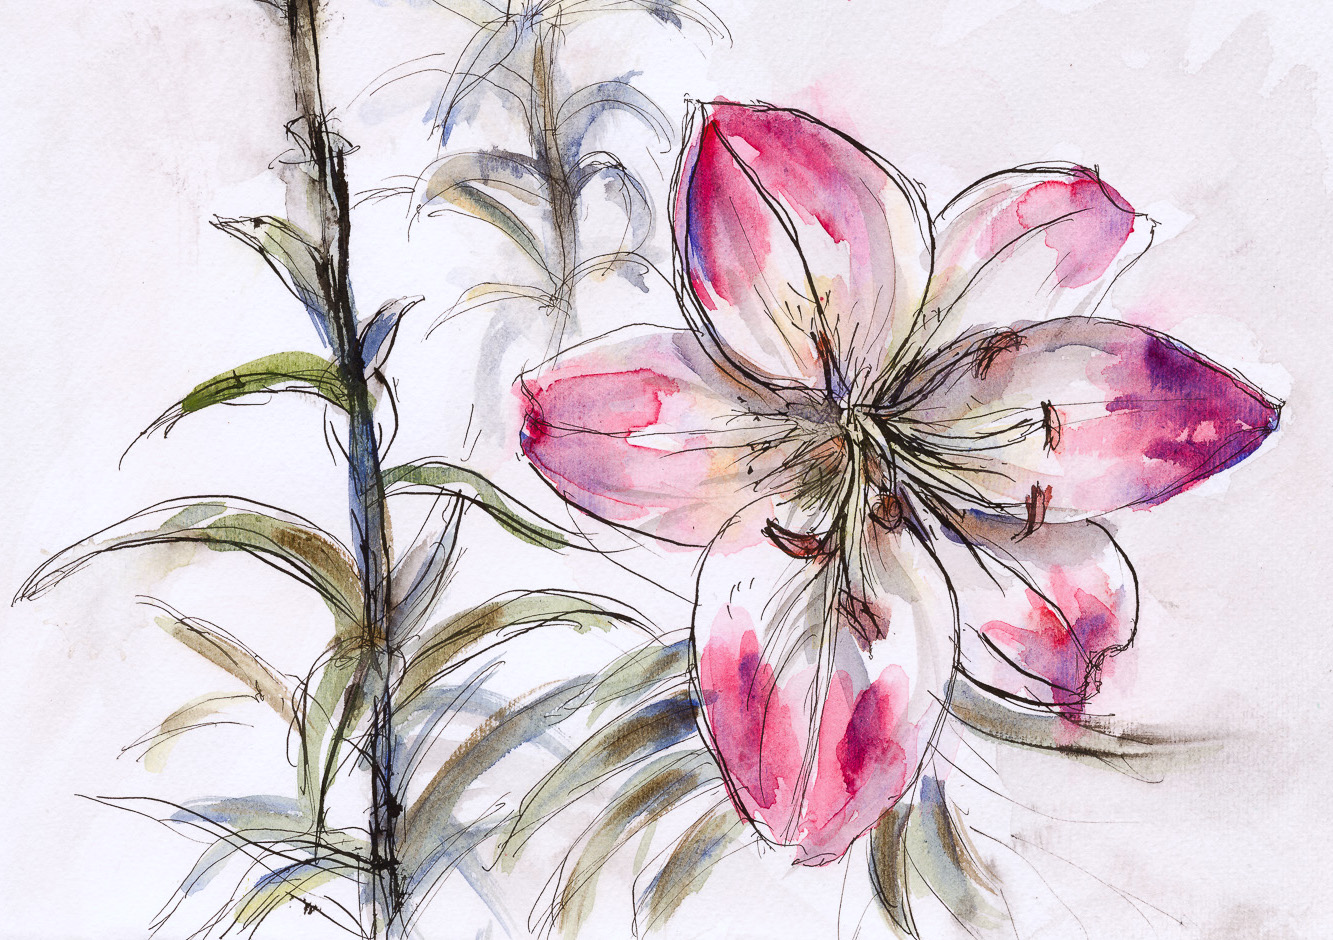 Darling Buds of May – Flower Studies